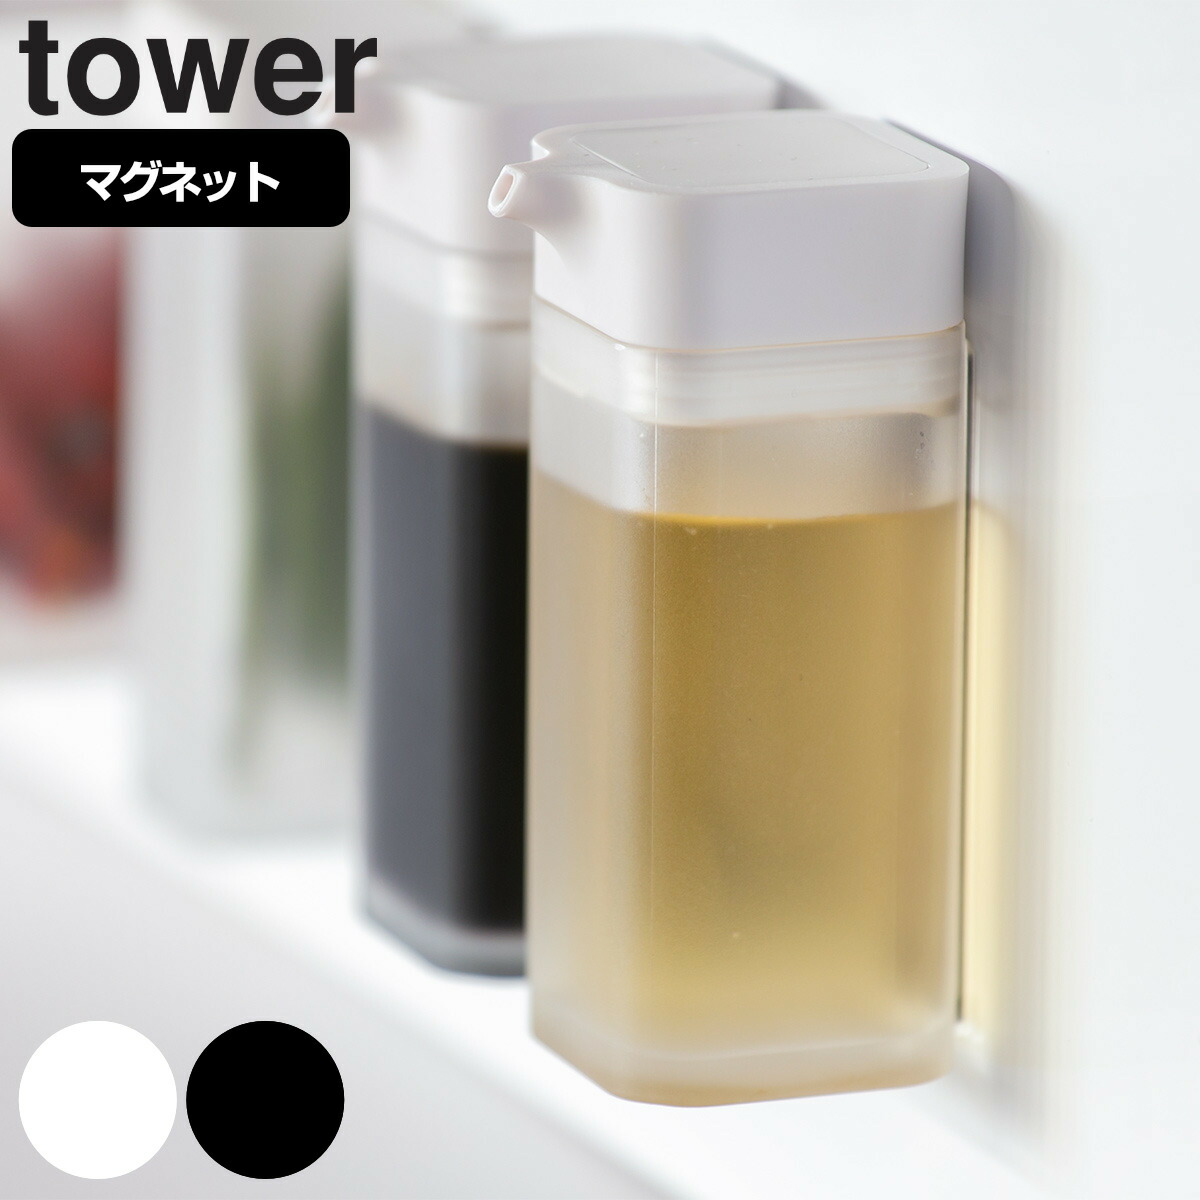 山崎実業 tower マグネットプッシュ式醤油差し タワー 同色4個 